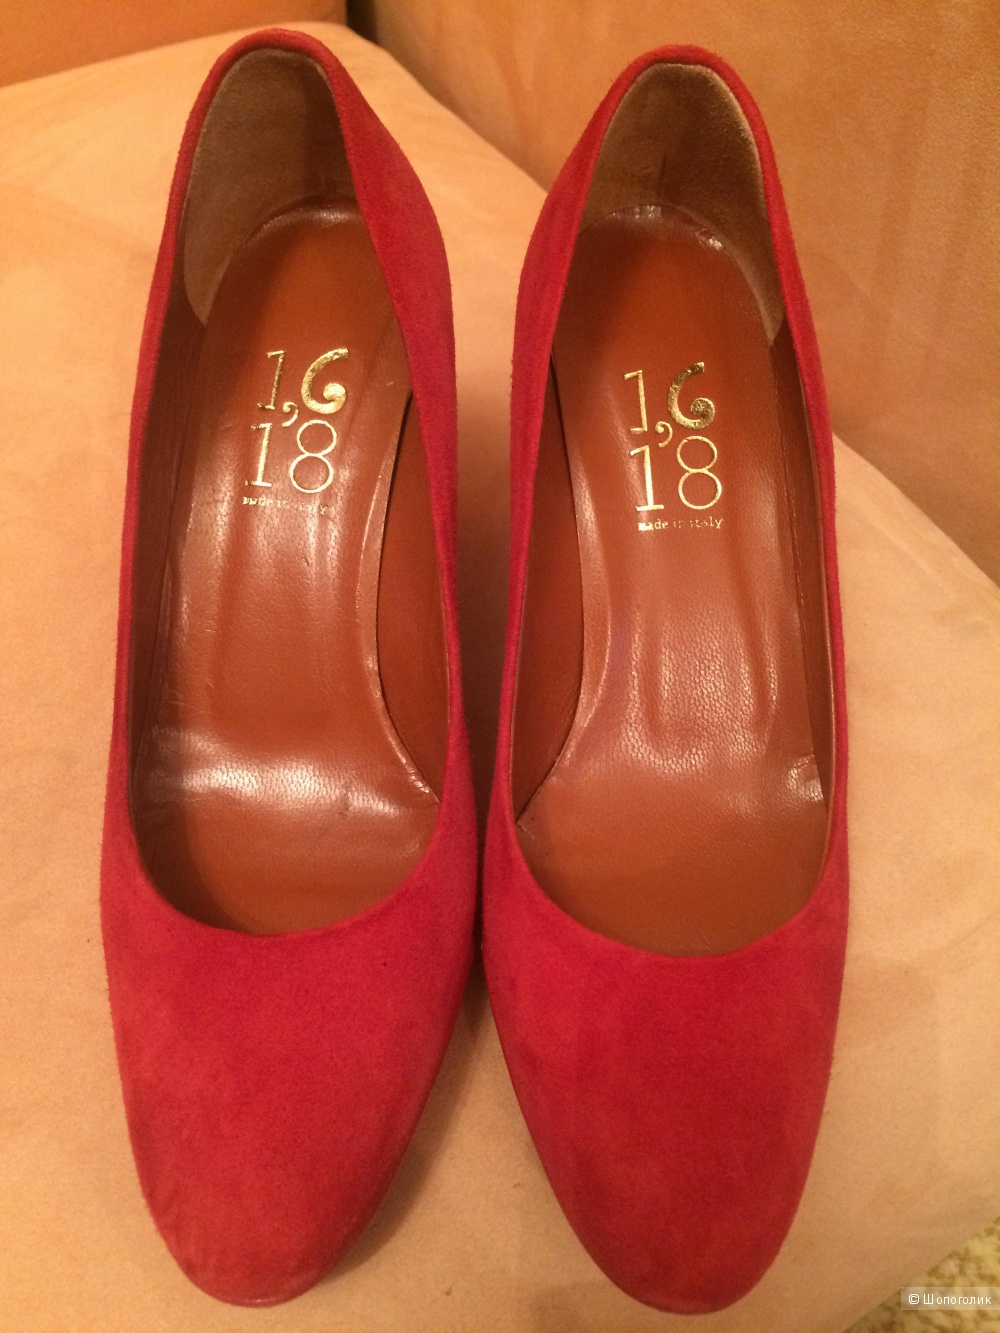 Туфли 1,618 красные 36 размер новые